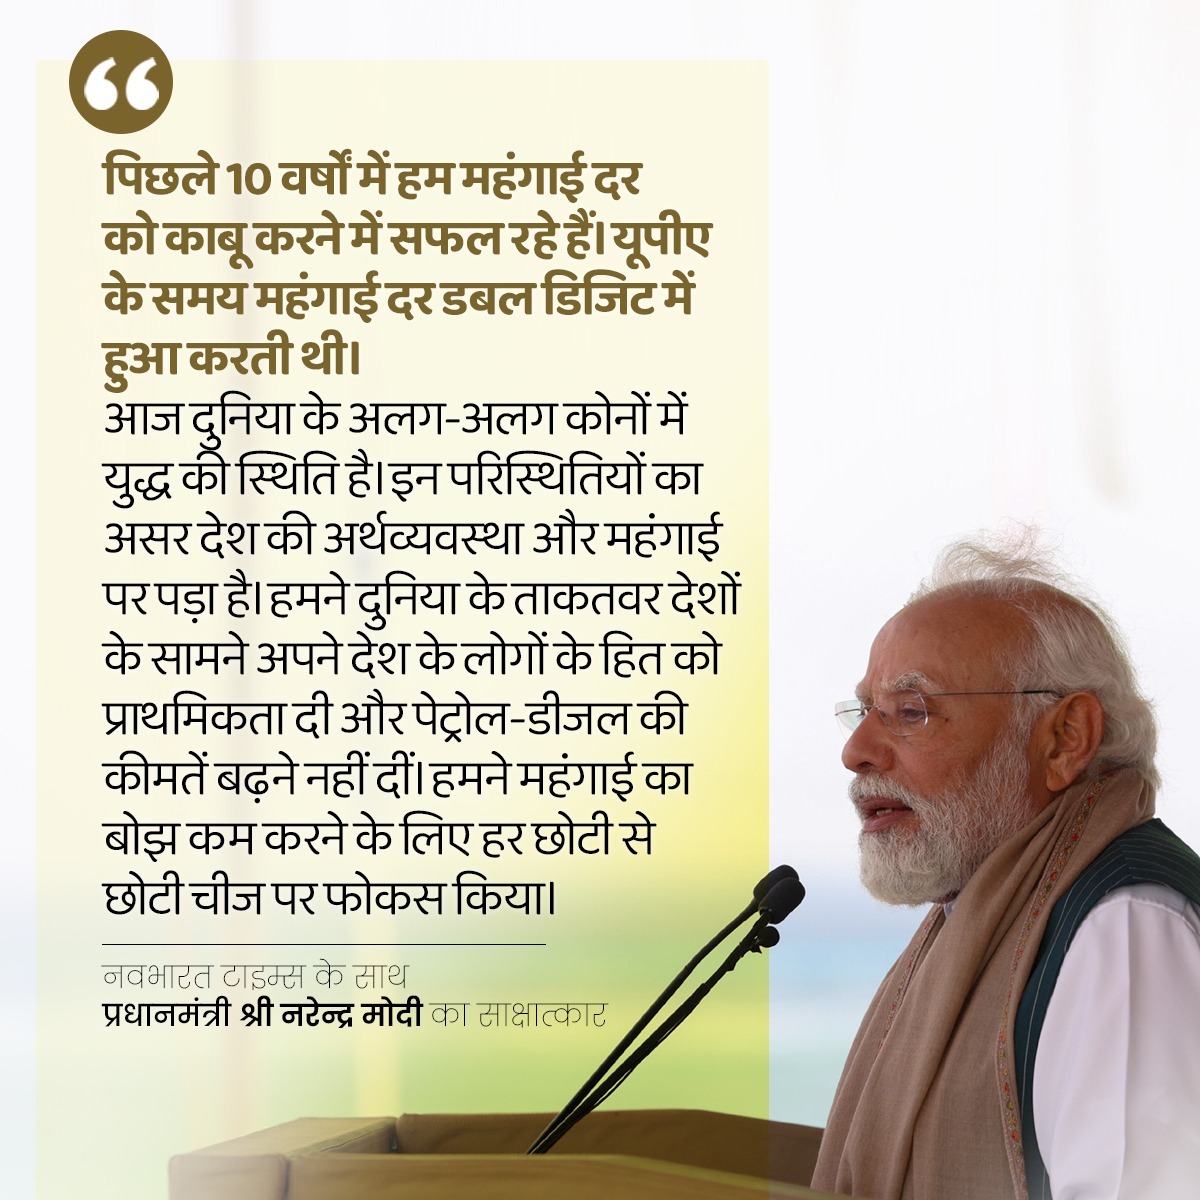 पिछले 10 वर्षों में हम महंगाई दर को काबू करने में सफल रहे हैं। यूपीए के समय महंगाई दर डबल डिजिट में हुआ करती थी। -प्रधानमंत्री श्री @narendramodi जी #ModiSarkar #BJPGovernment